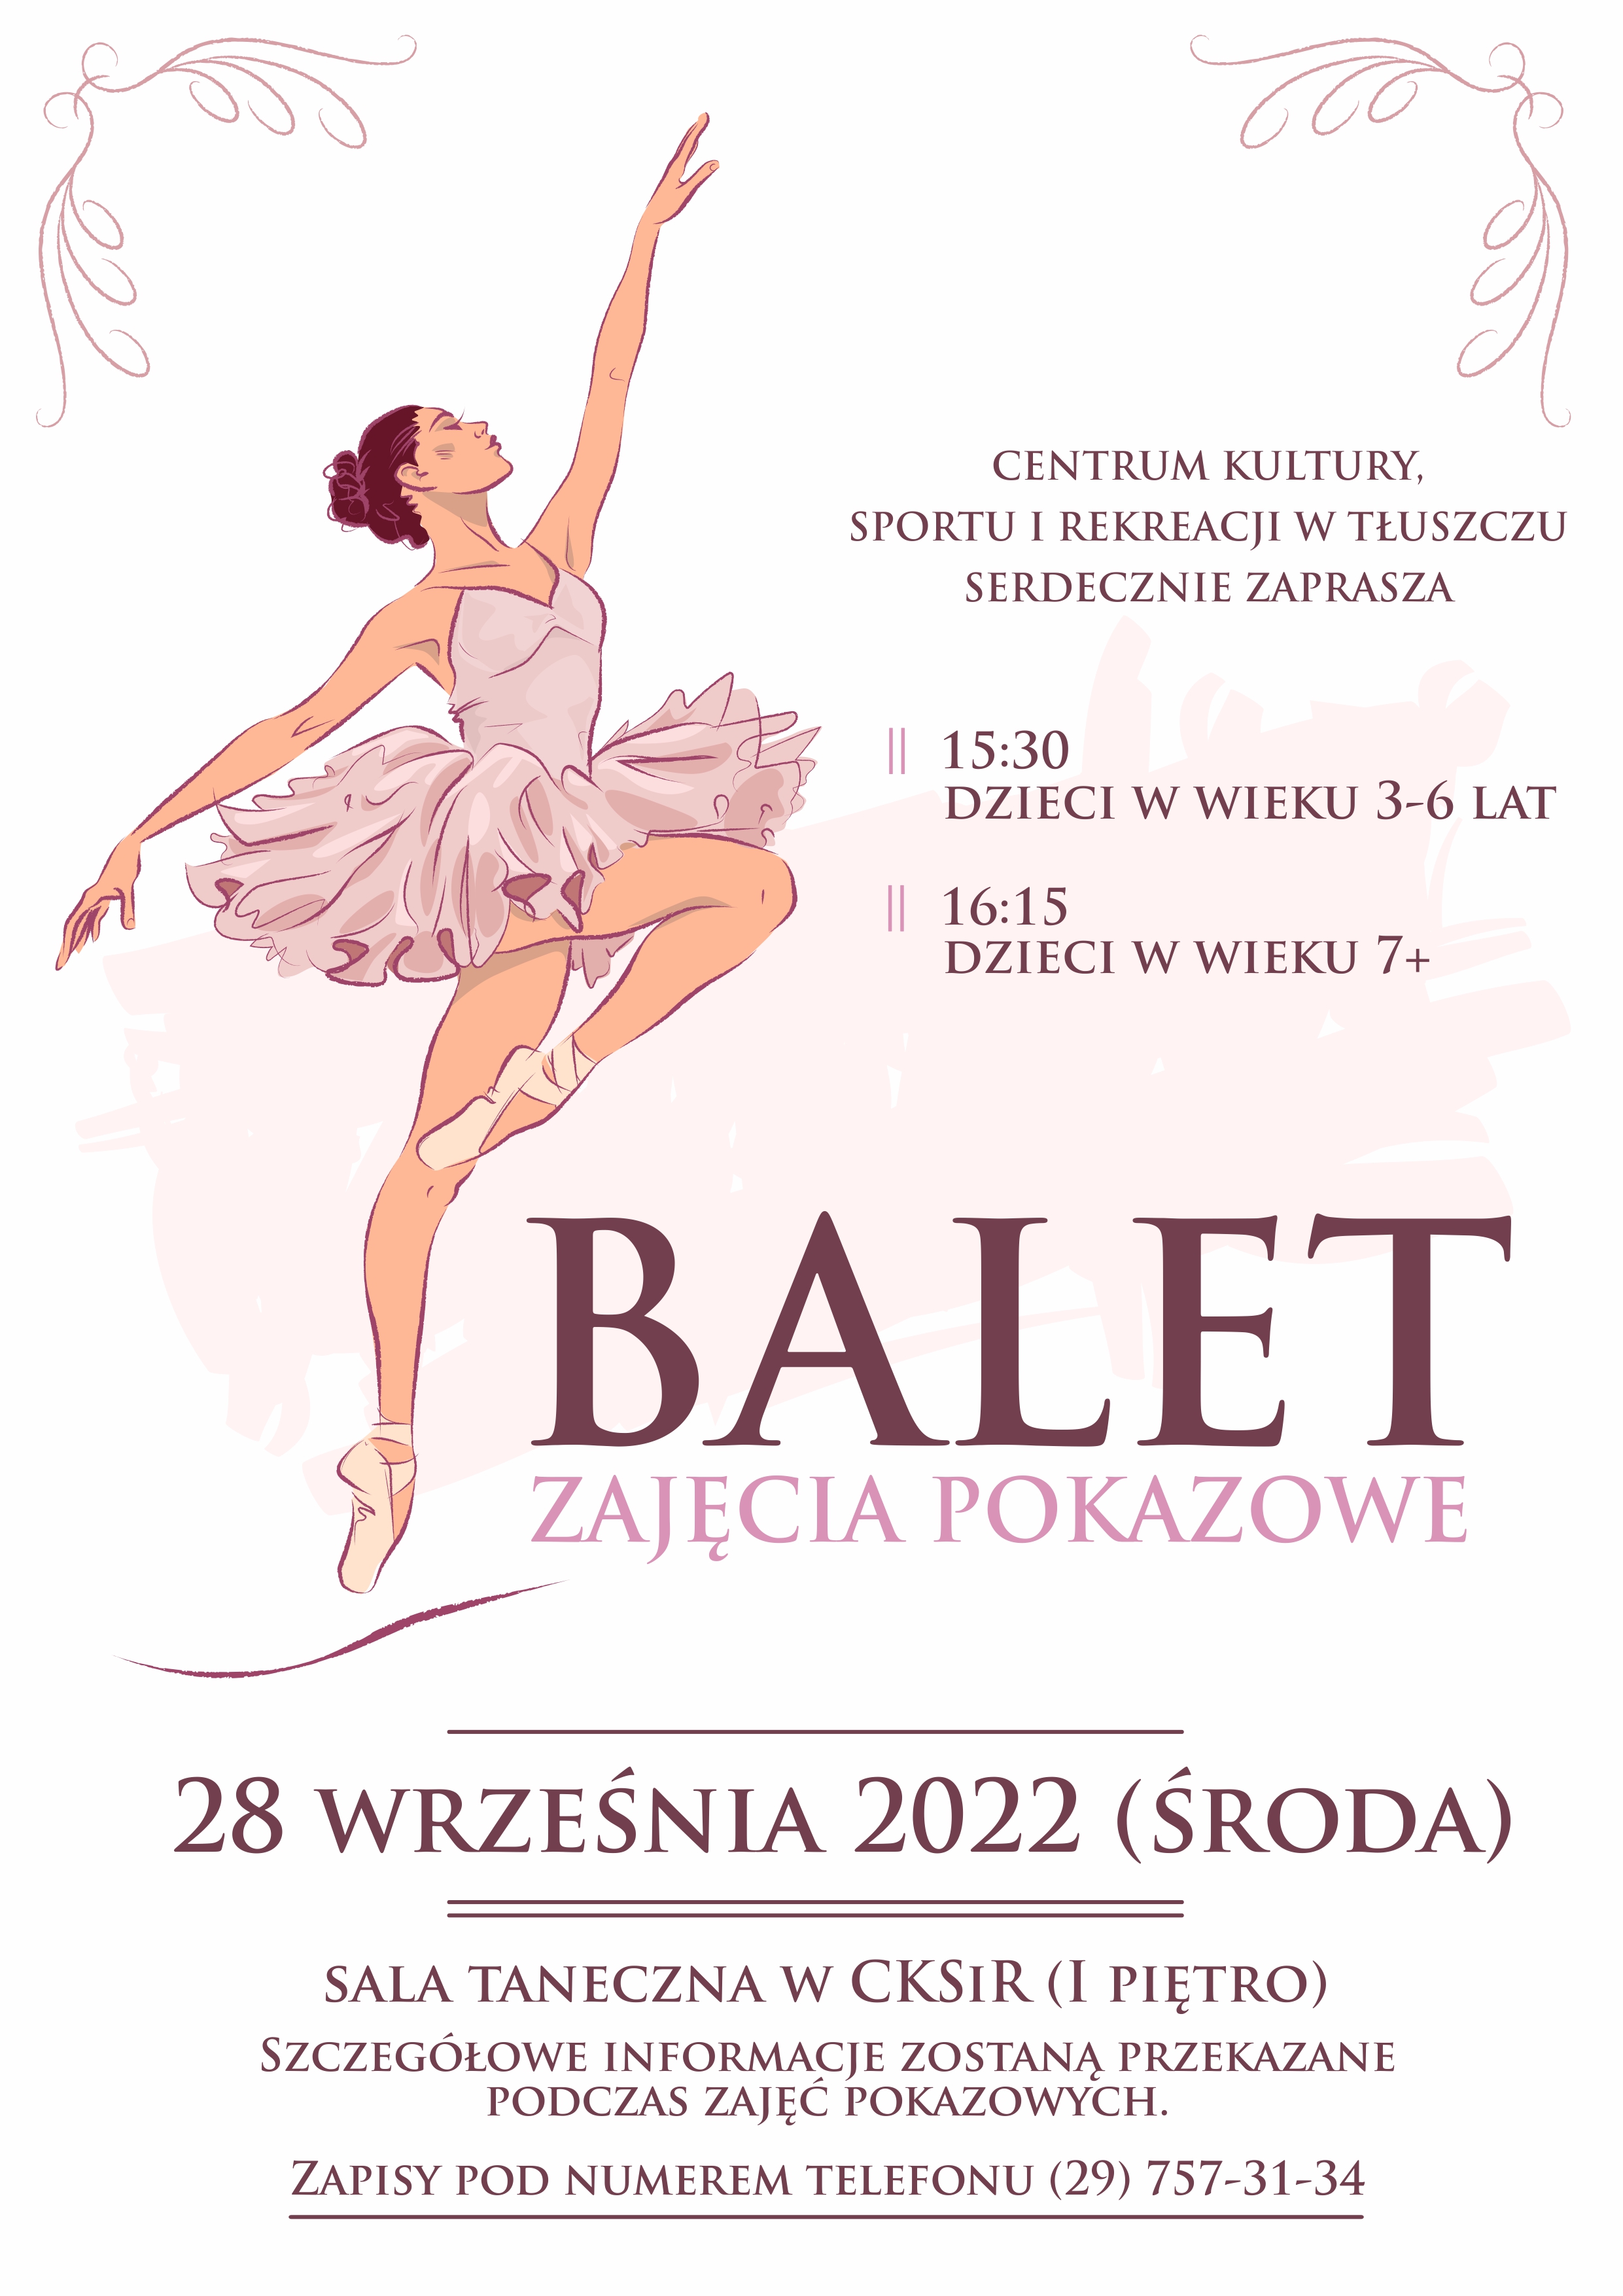 Zajęcia pokazowe z baletu